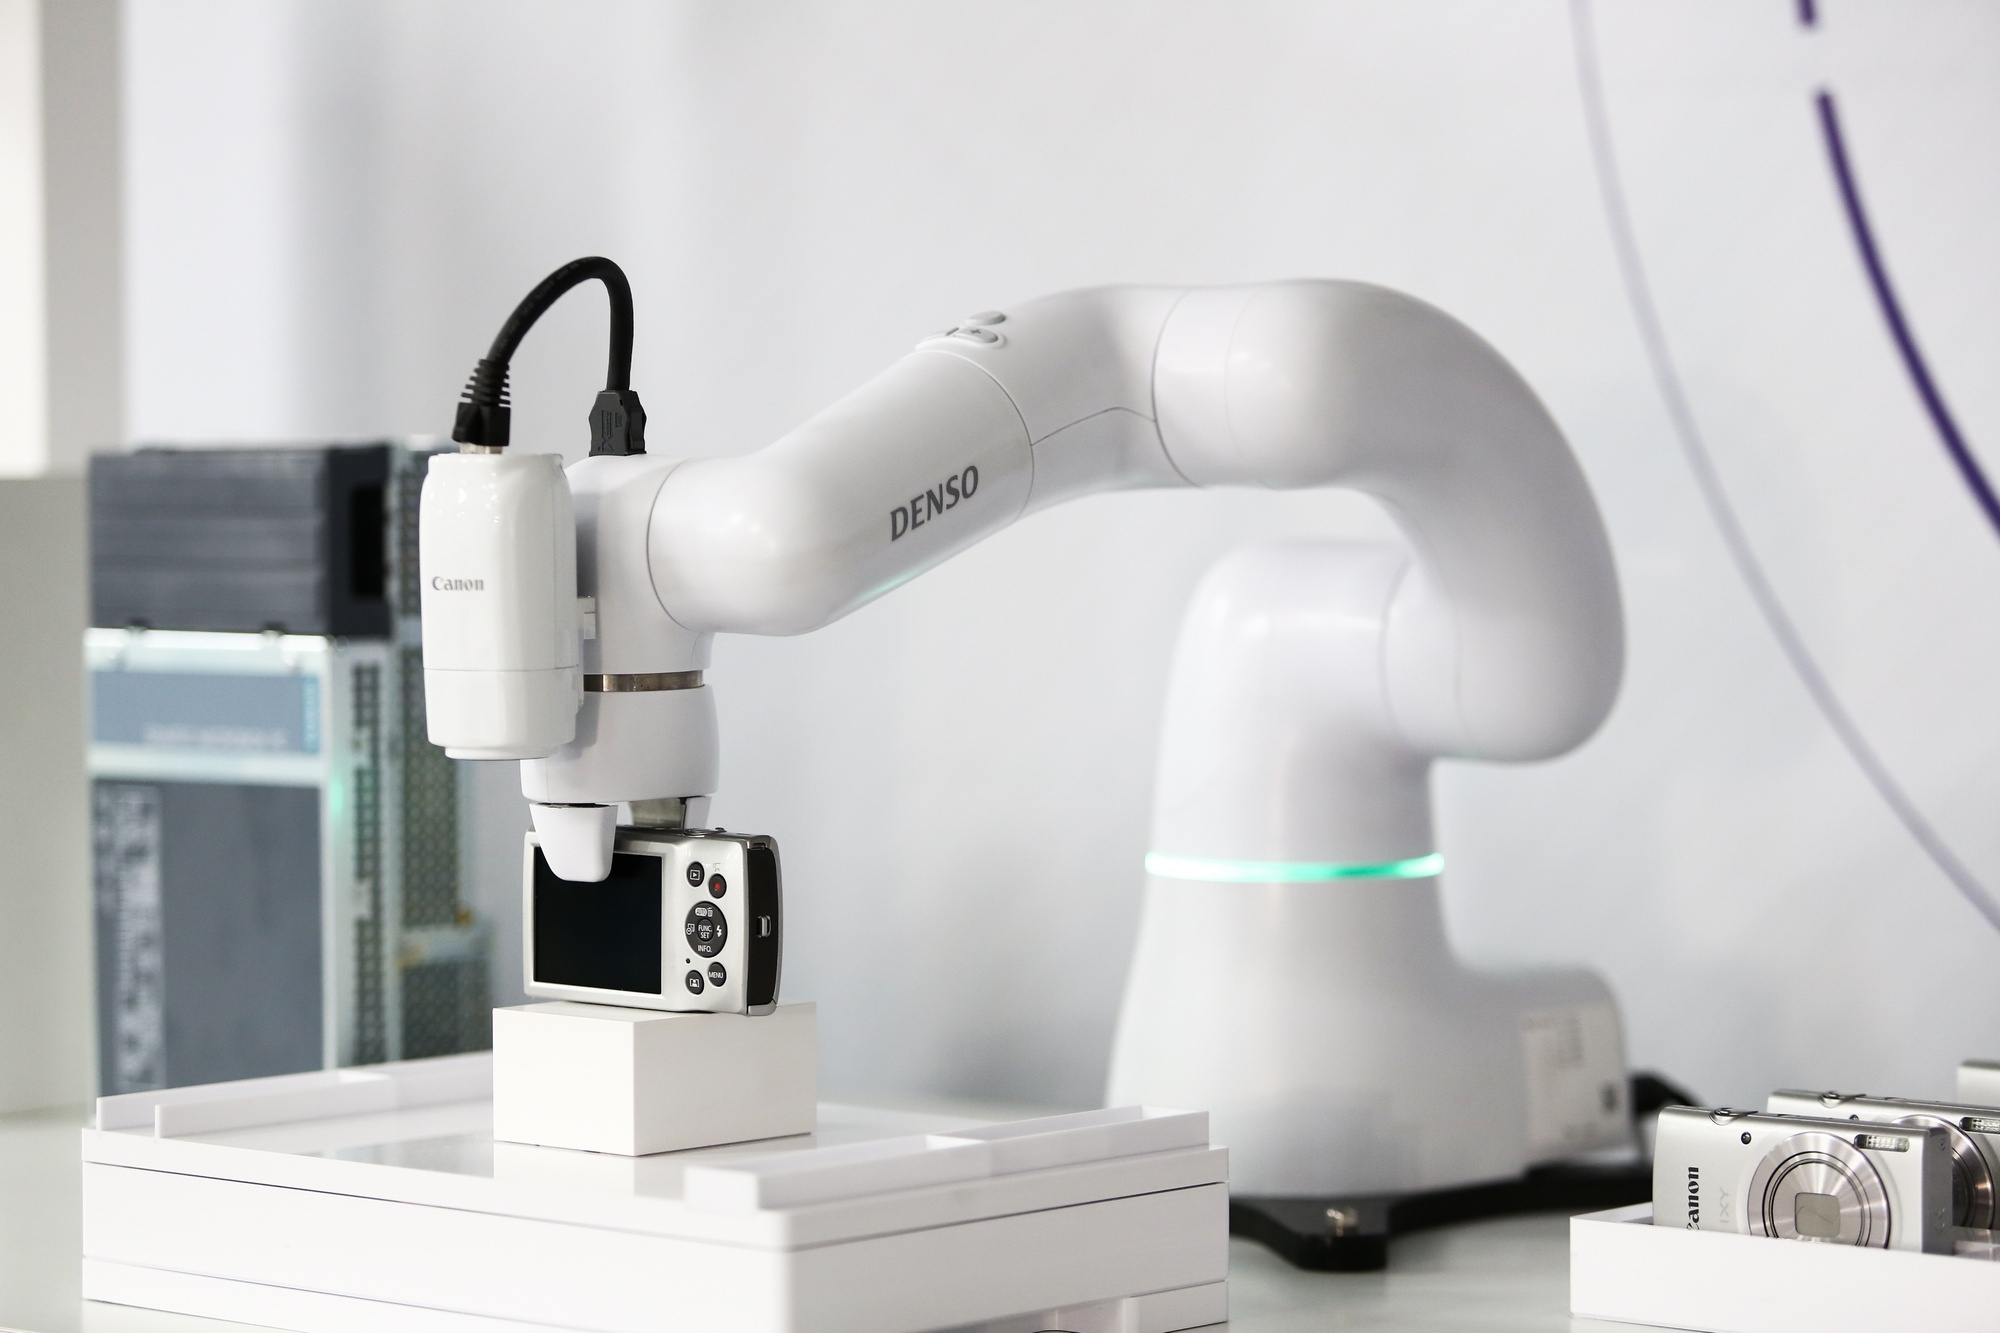 Robot colaborativo COBOTTA en aplicaciones industriales